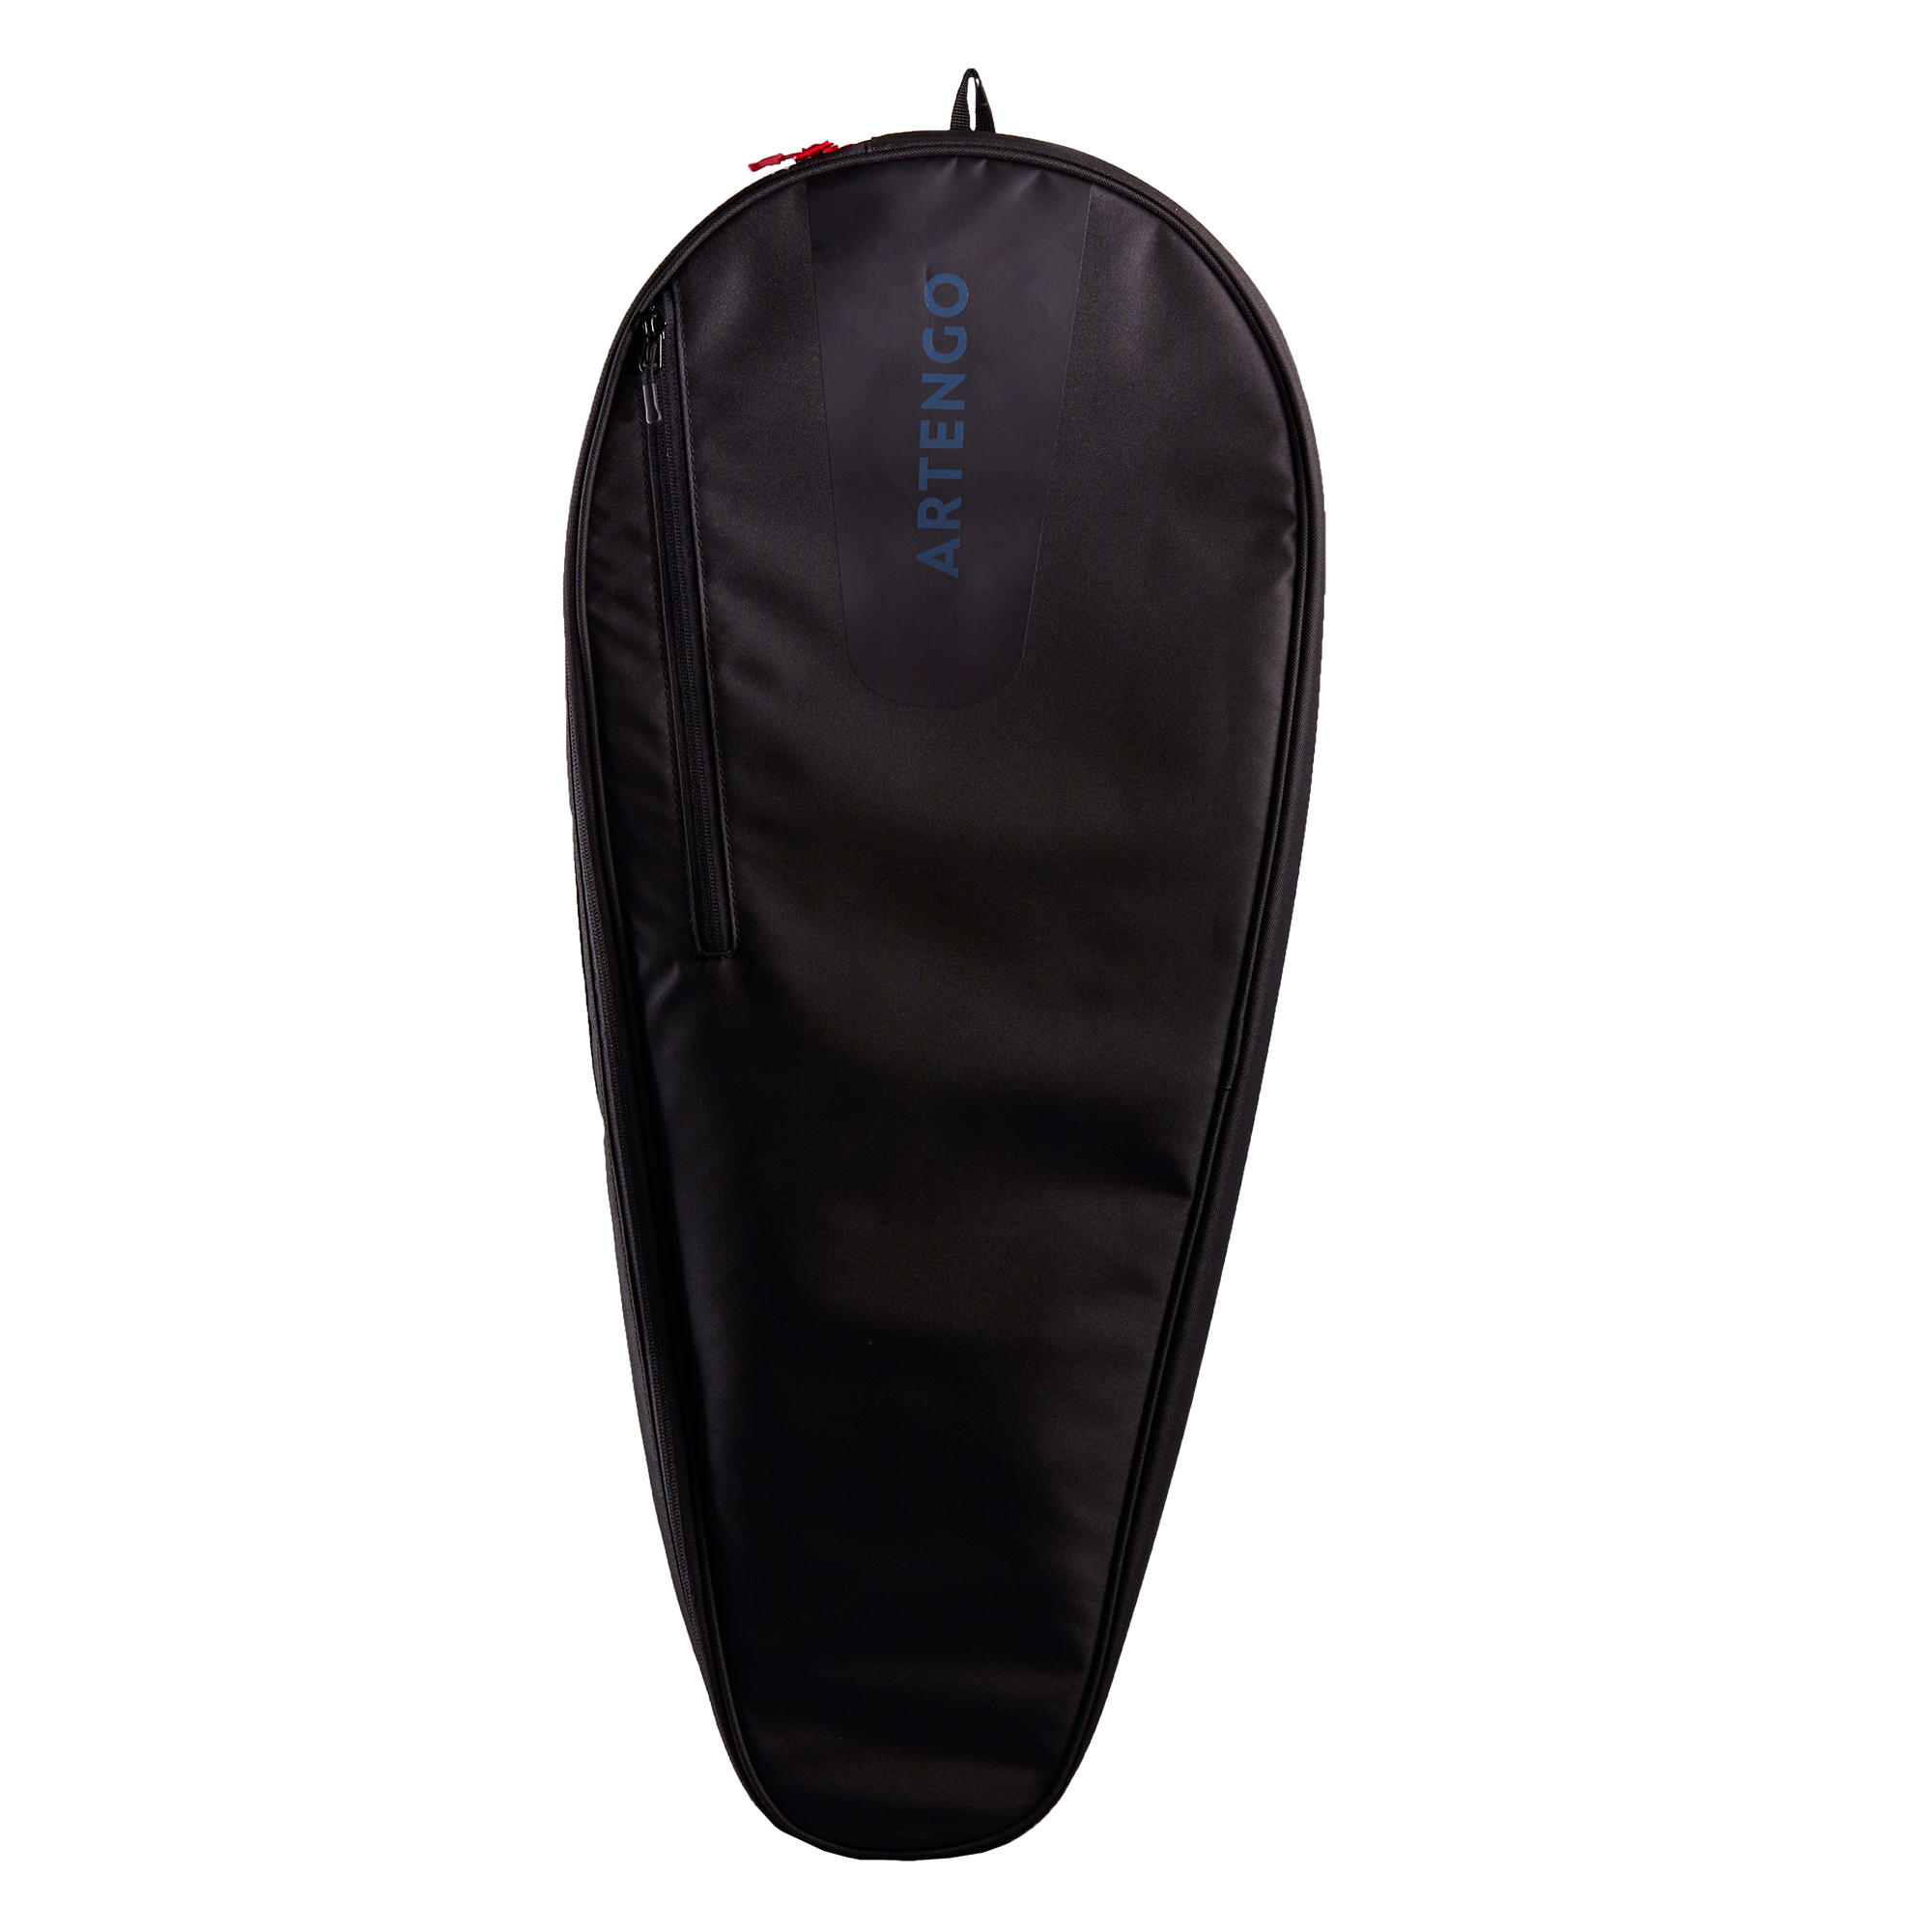 [ส่งฟรี ] กระเป๋าเทนนิสรุ่น 100 M (สีดำ) Tennis Bag 100 M - Black Sport tennis Tennis Bag Equipment กระเป๋าเทนนิสแท้ คุณภาพสูง โปรโมชั่นสุดคุ้ม